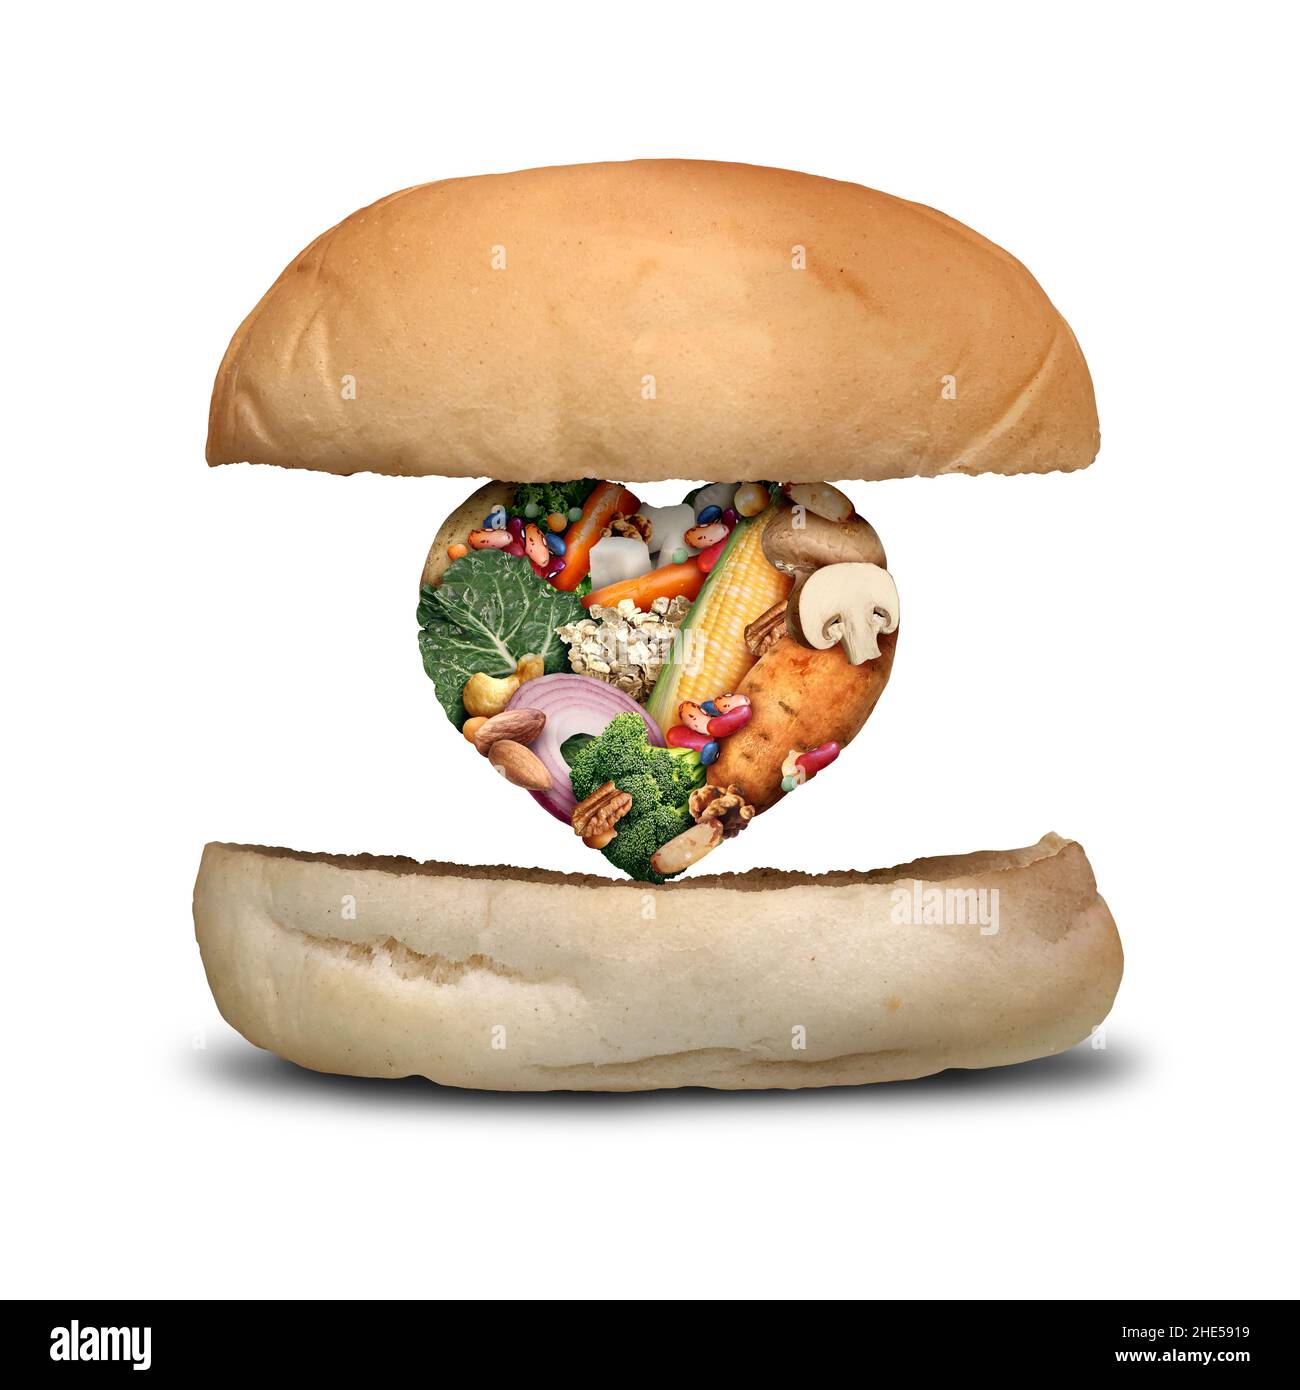 Il concetto di Vegan Burger come polpettine vegetariano a base di piante per hamburger in una dieta vegetariana fatta con fagioli patate funghi vegetali a forma di cuore. Foto Stock